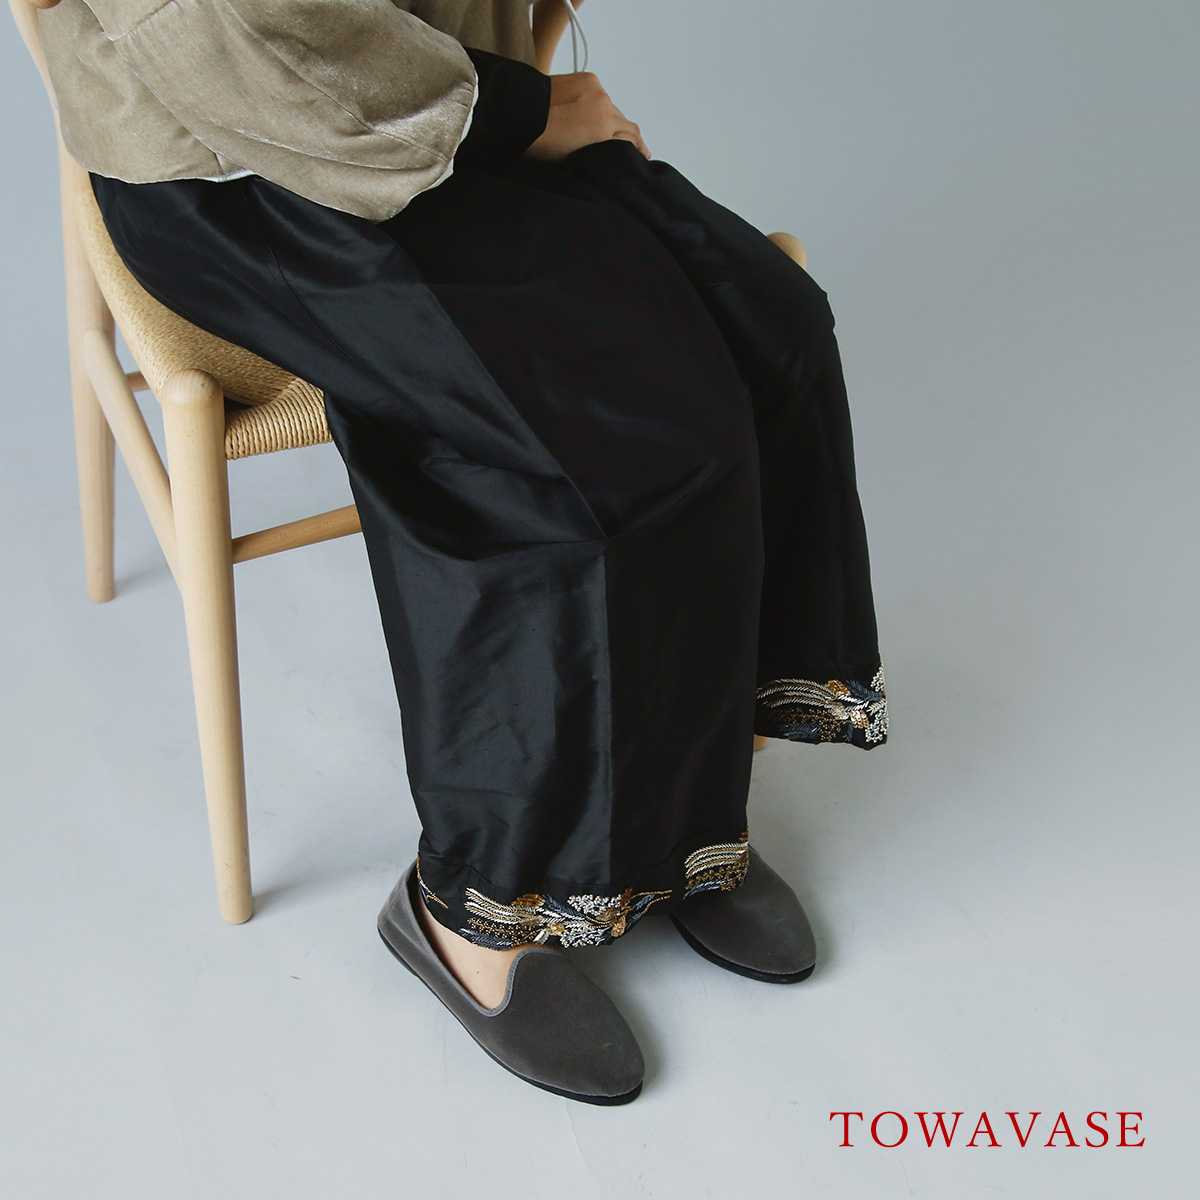 TOWAVASE(トワヴァーズ)シルク 刺繍 マノン パンツ “Manon” 26-0043a